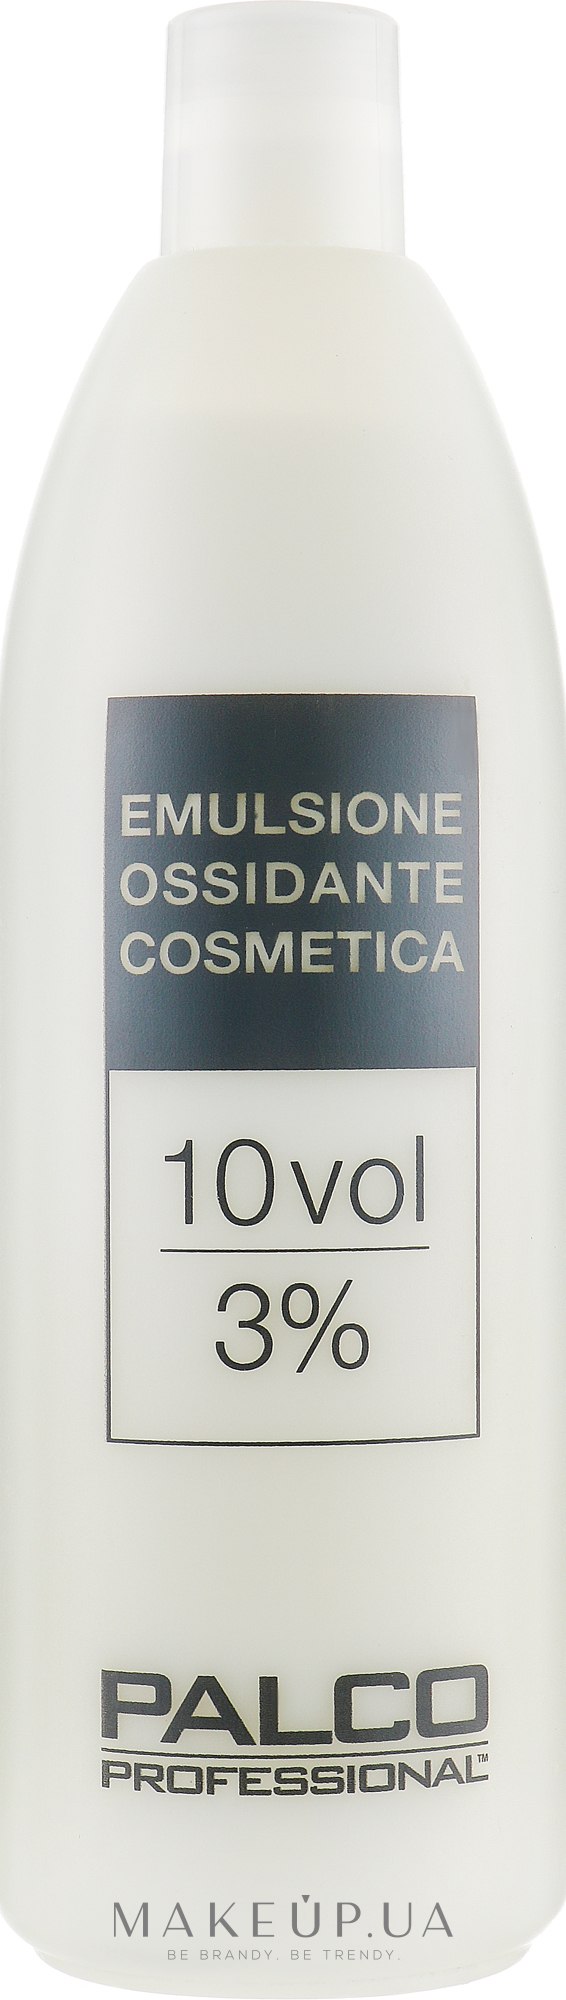 Окислительная эмульсия 10 объемов 3% - Palco Professional Emulsione Ossidante Cosmetica — фото 1000ml